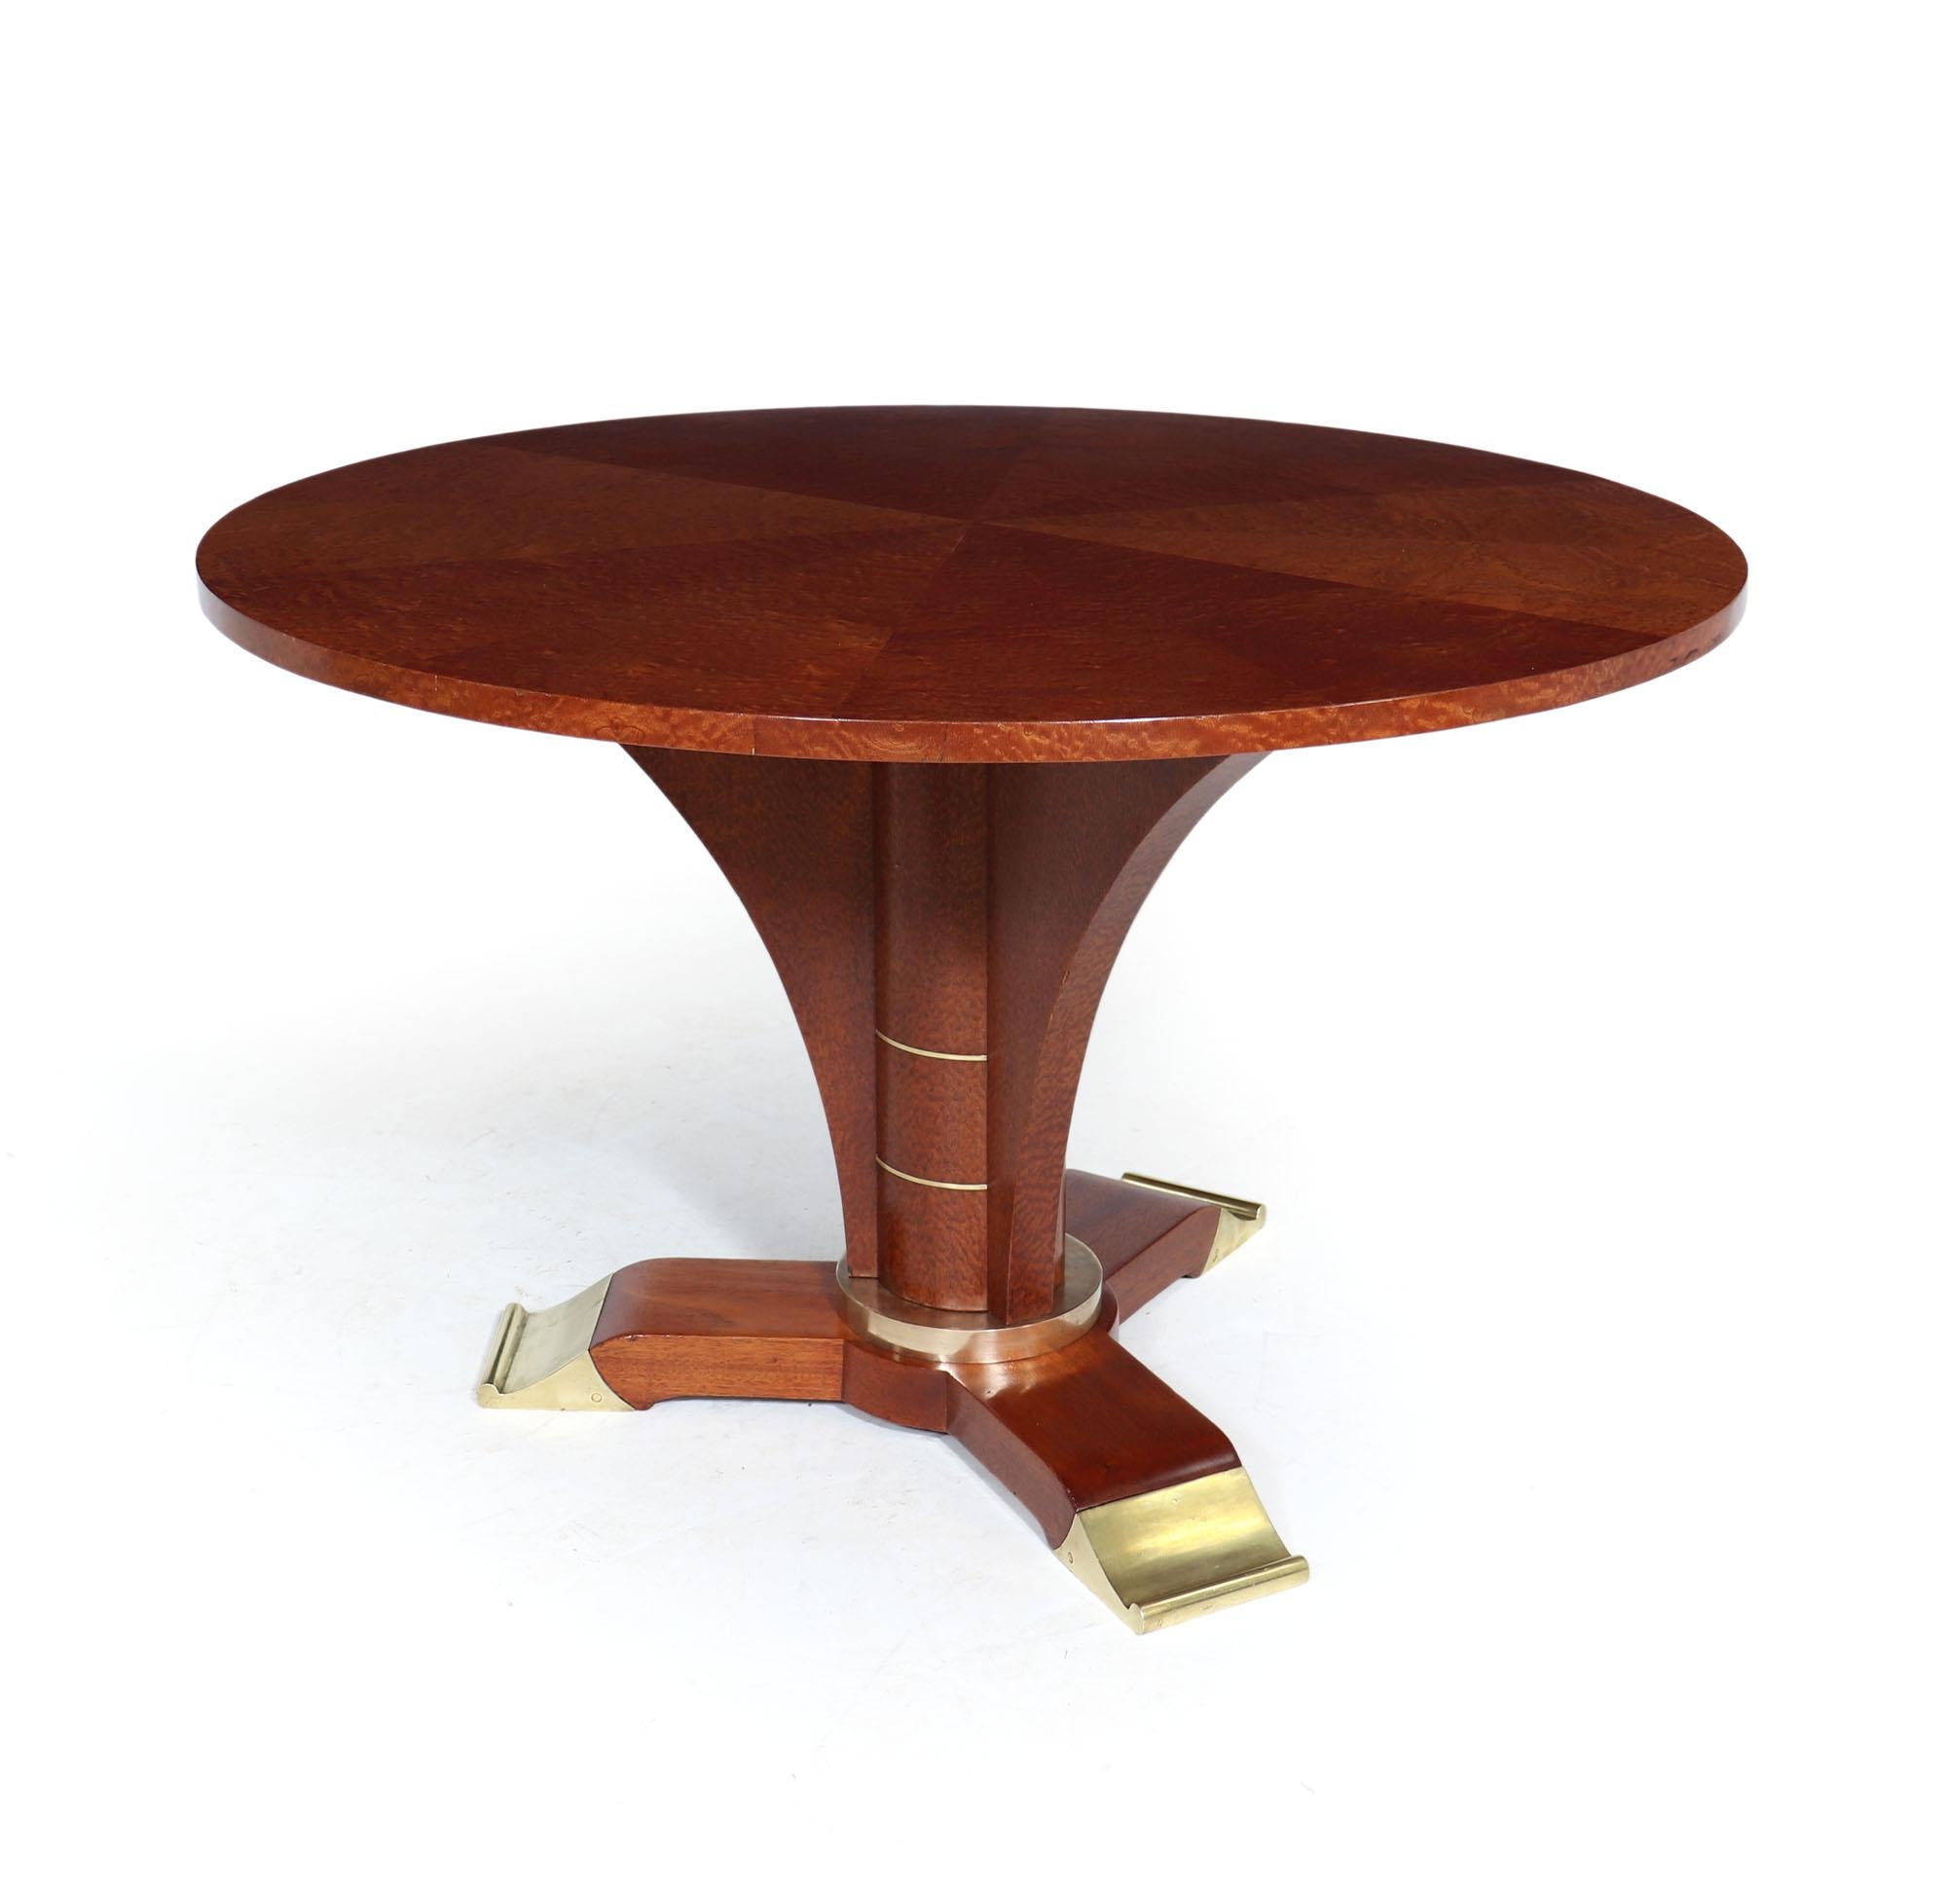 JULES LELEU - ART DECO TISCH
Ein Art Deco runder Couchtisch von Jules Leleu, außergewöhnlich hohe Qualität und ansprechendes Design, wie von seiner Arbeit zu erwarten, hat es eine segmentierte Platte alle in Pomelle Sapele Holz, es hat eine zentrale